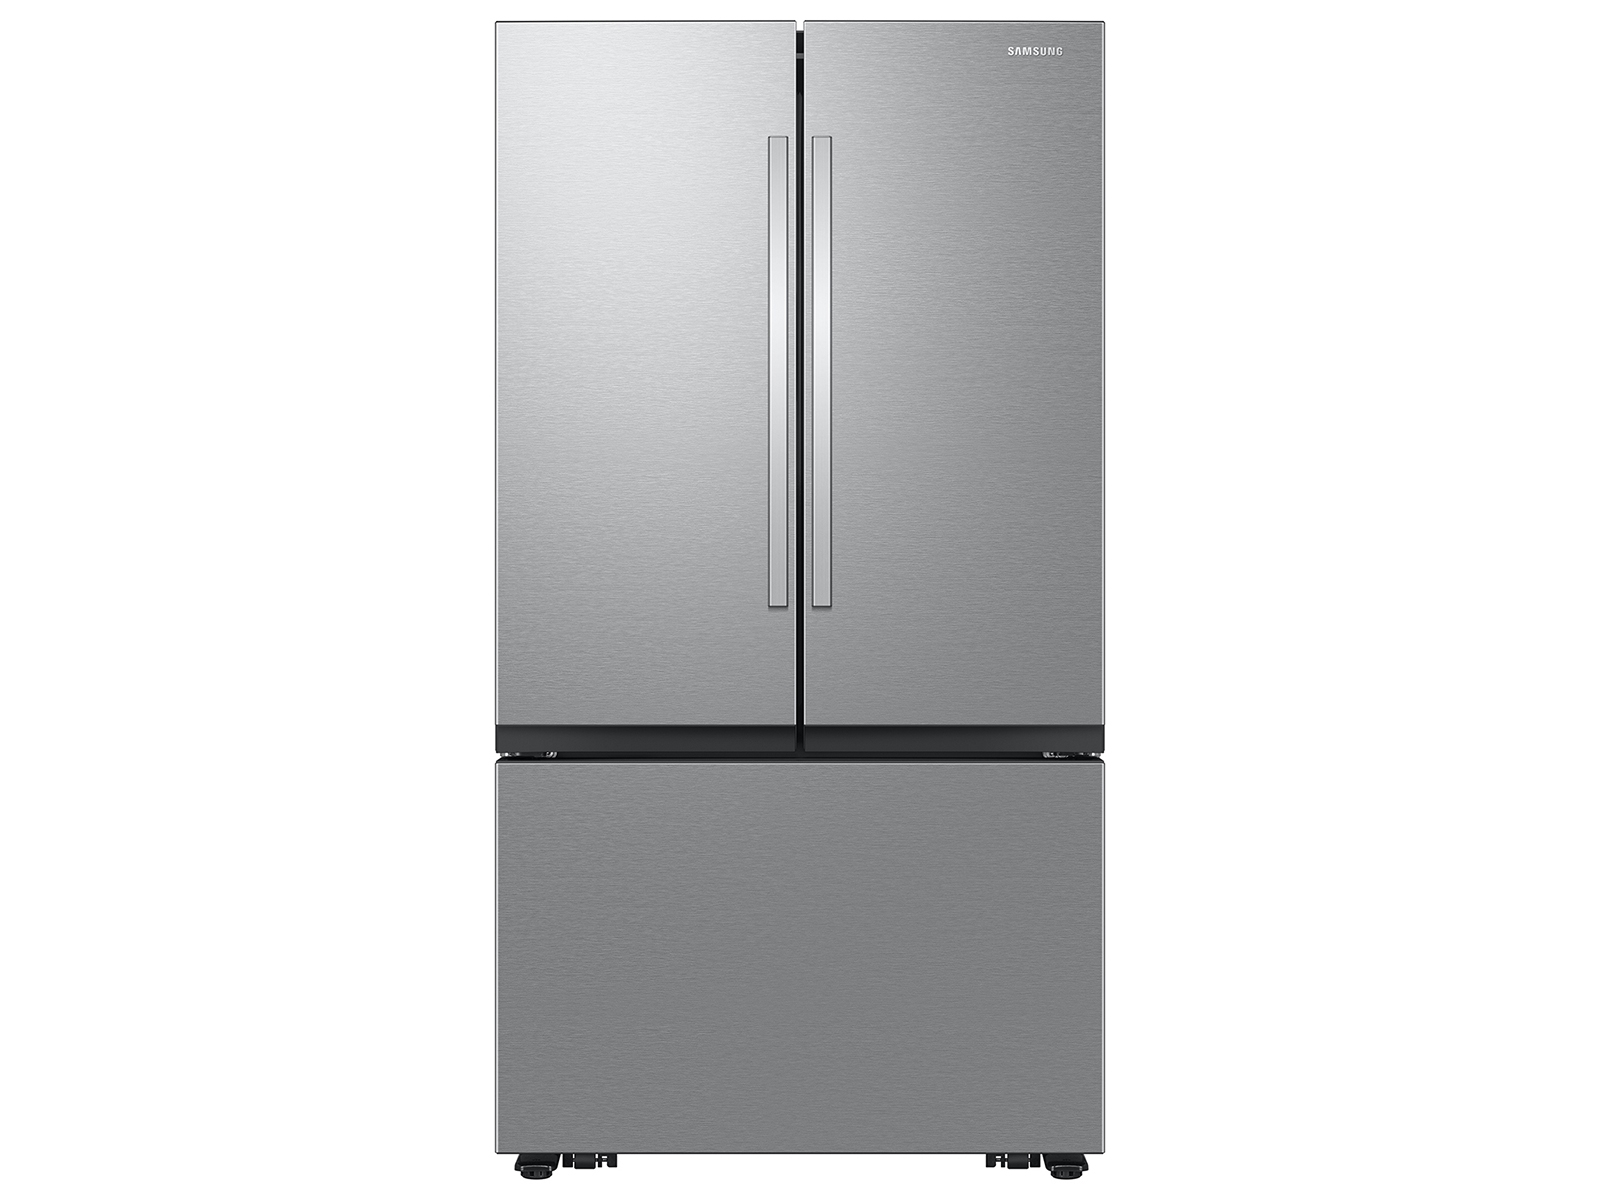 Photos - Fridge Samsung 27 cu. ft. Mega Capacity Counter Depth 3-Door French Door Refriger 